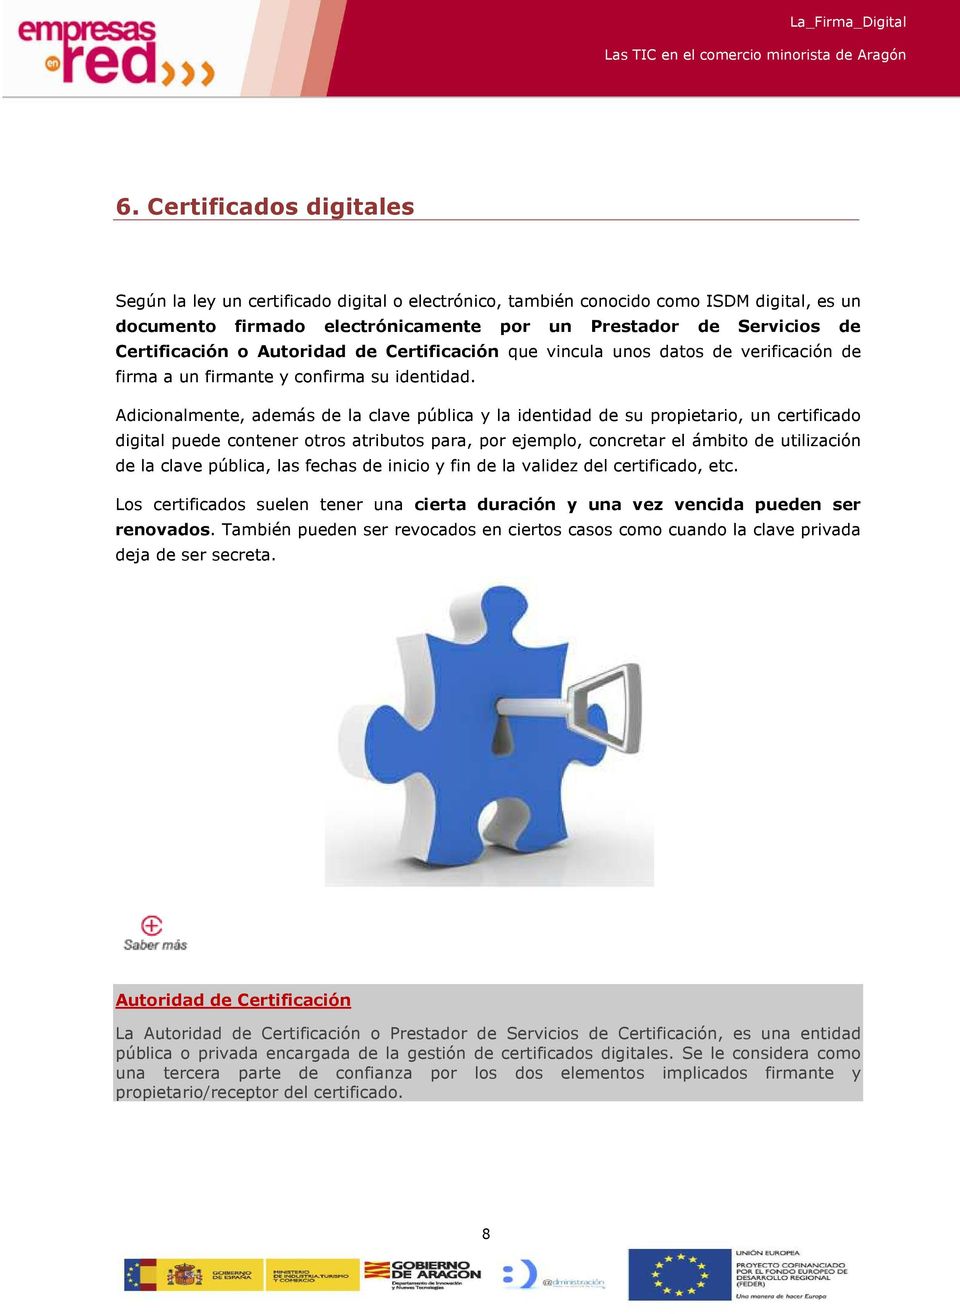 Adicionalmente, además de la clave pública y la identidad de su propietario, un certificado digital puede contener otros atributos para, por ejemplo, concretar el ámbito de utilización de la clave